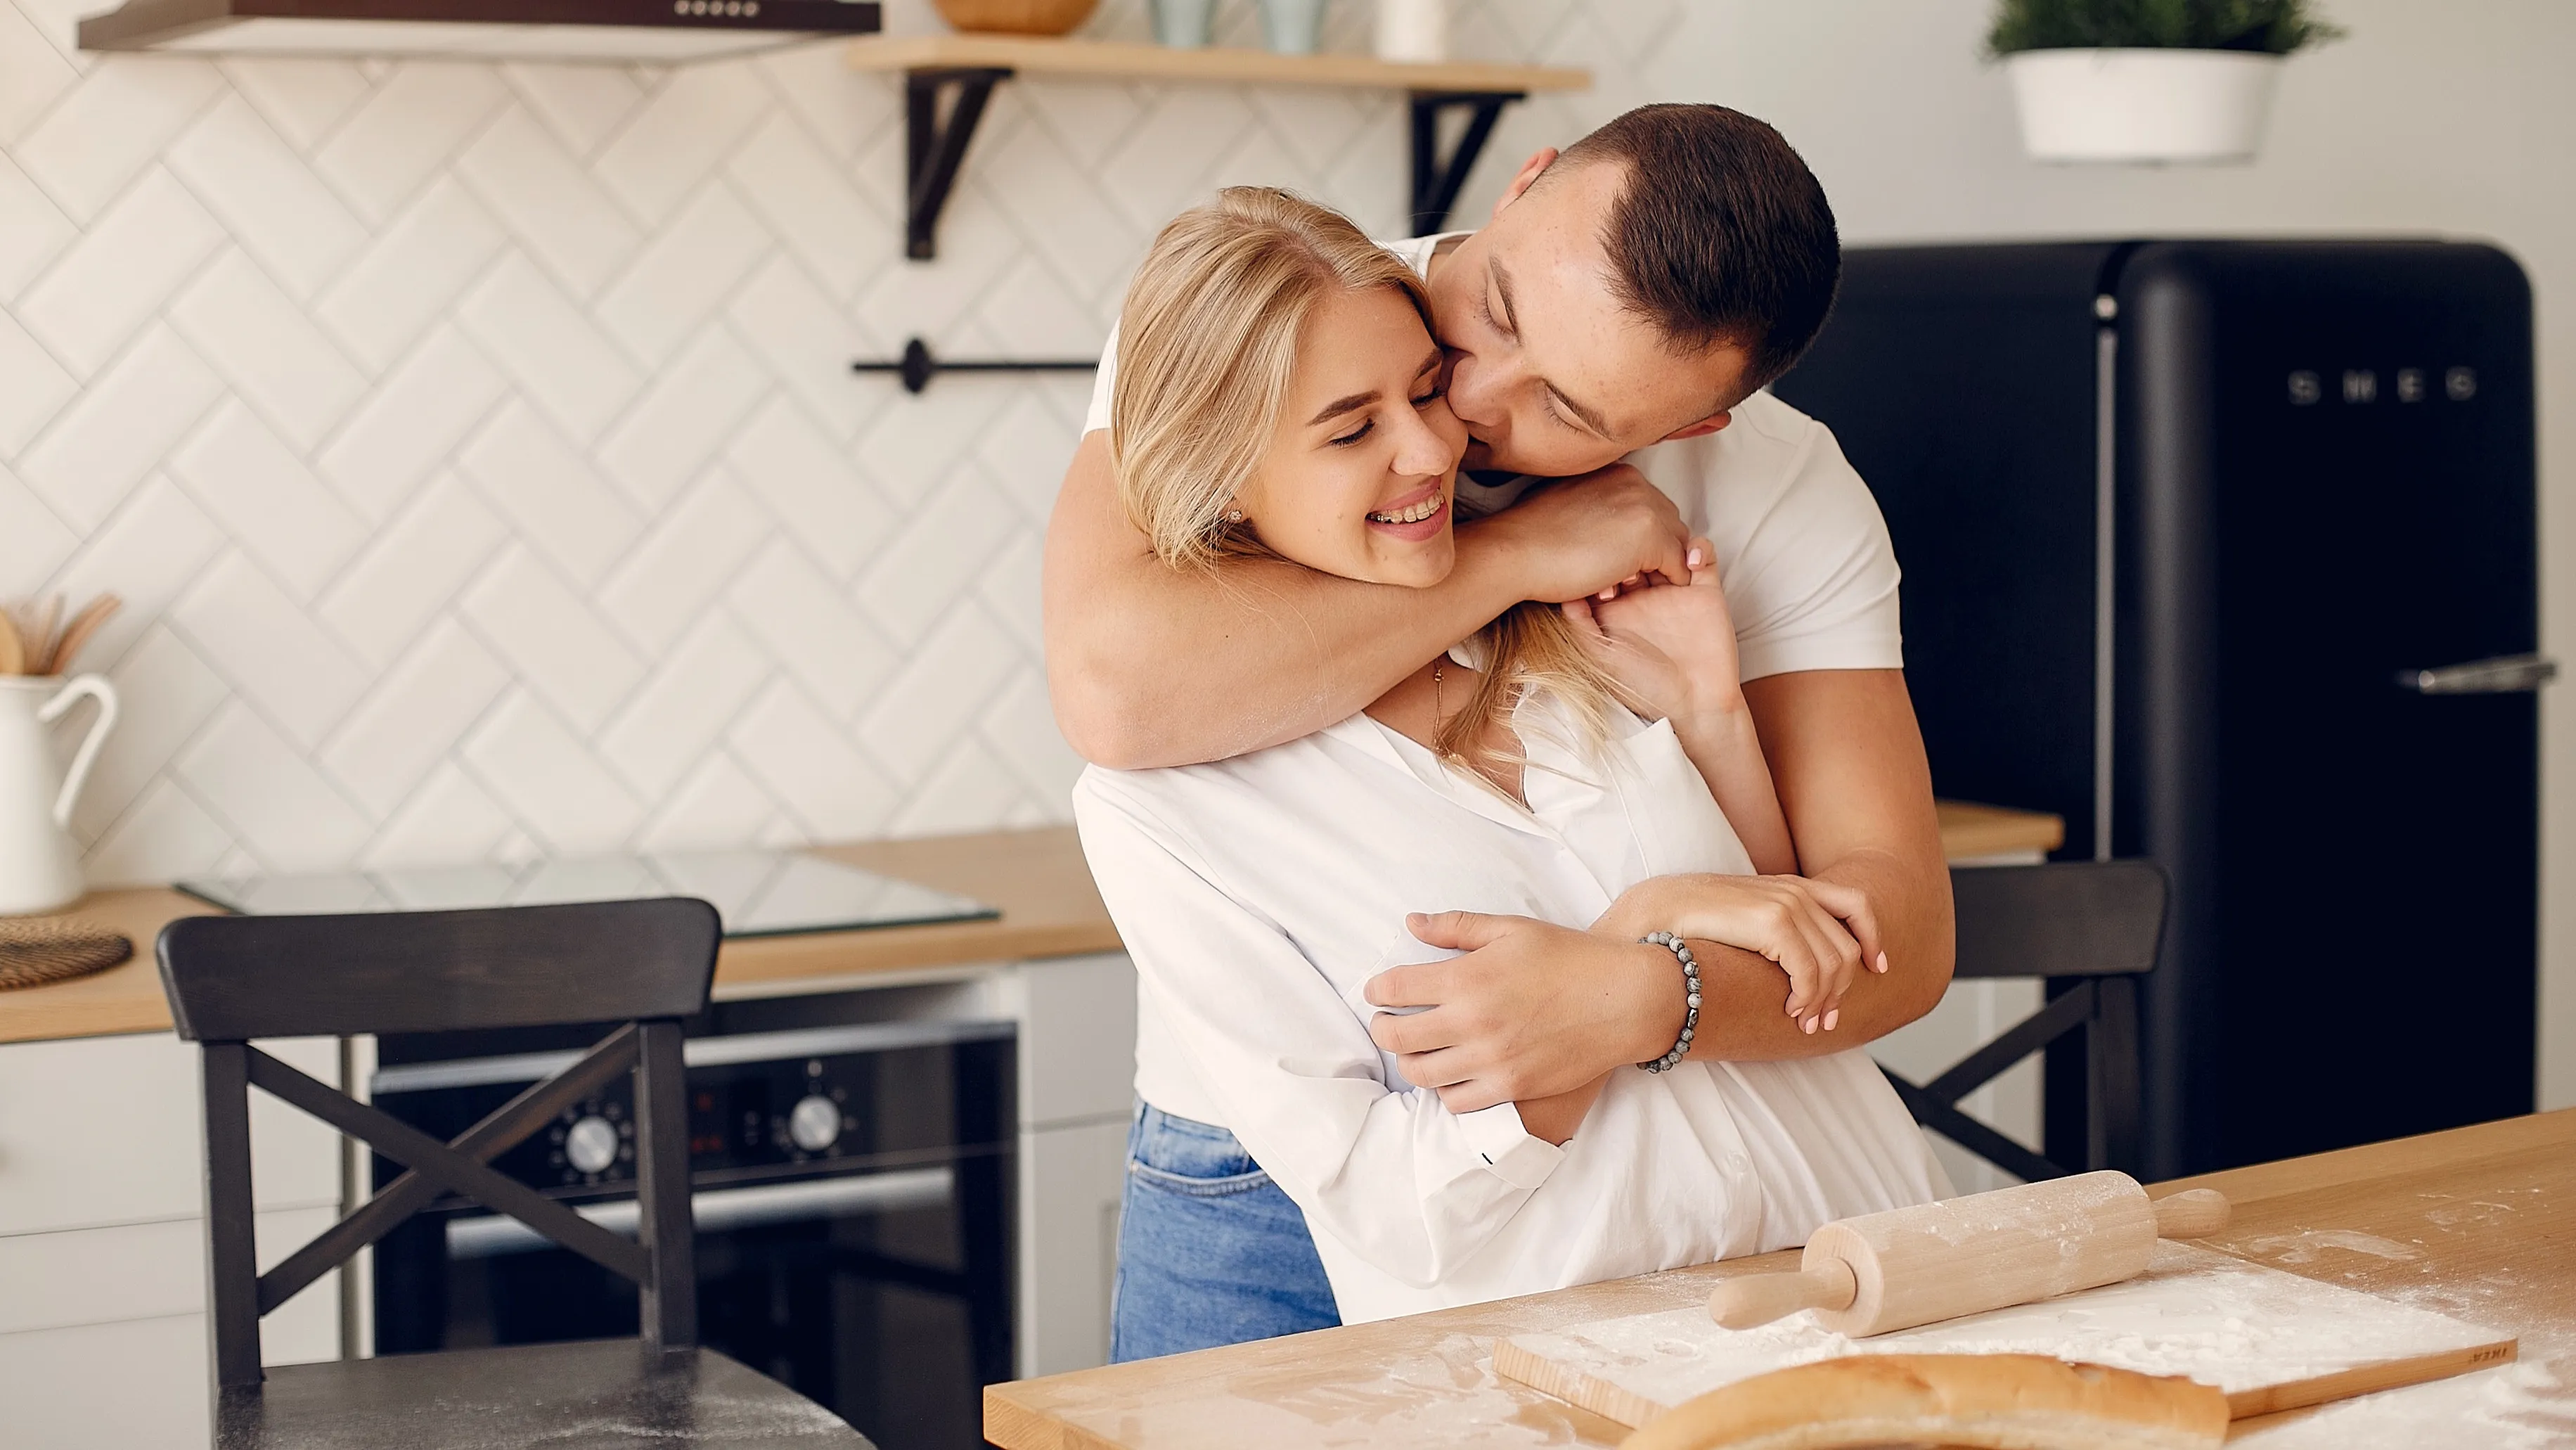 8 секретных правил счастливого брака от пар, знающих, что такое любовь